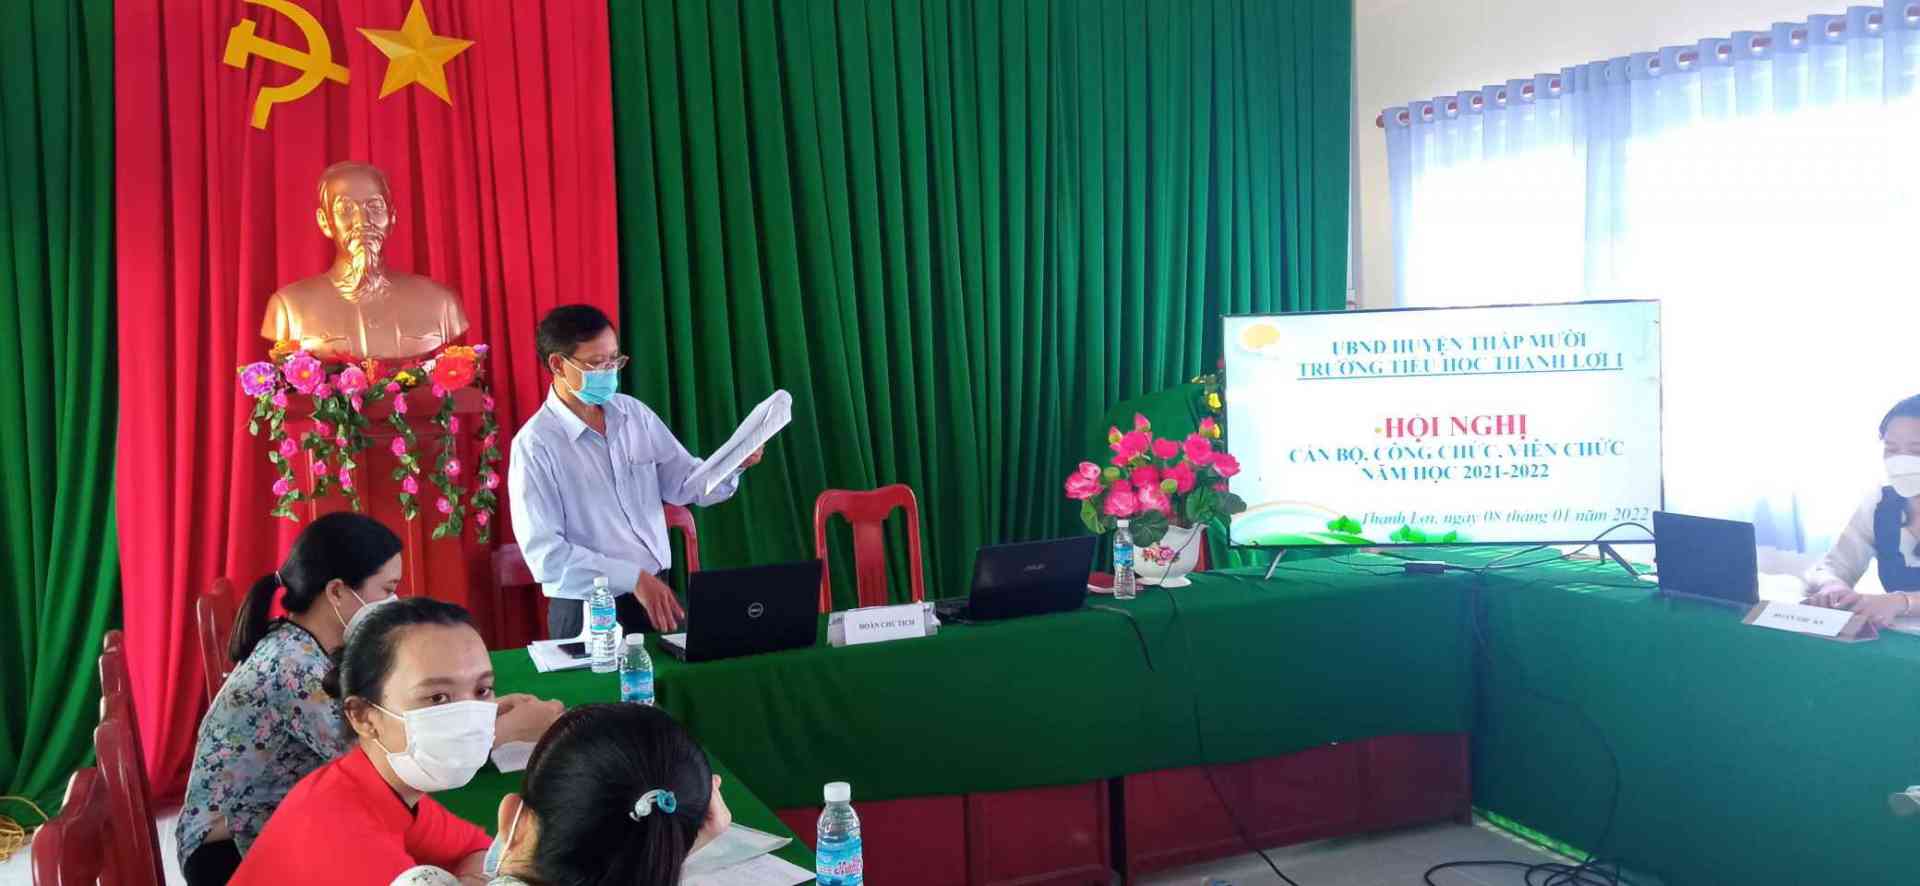 Thầy Nguyễn Ngọc Minh9 Bí thư chi bộ- Hiệu trưởng nhà trường) thông qua báo cáo hoạt động năm học 2020-2021.